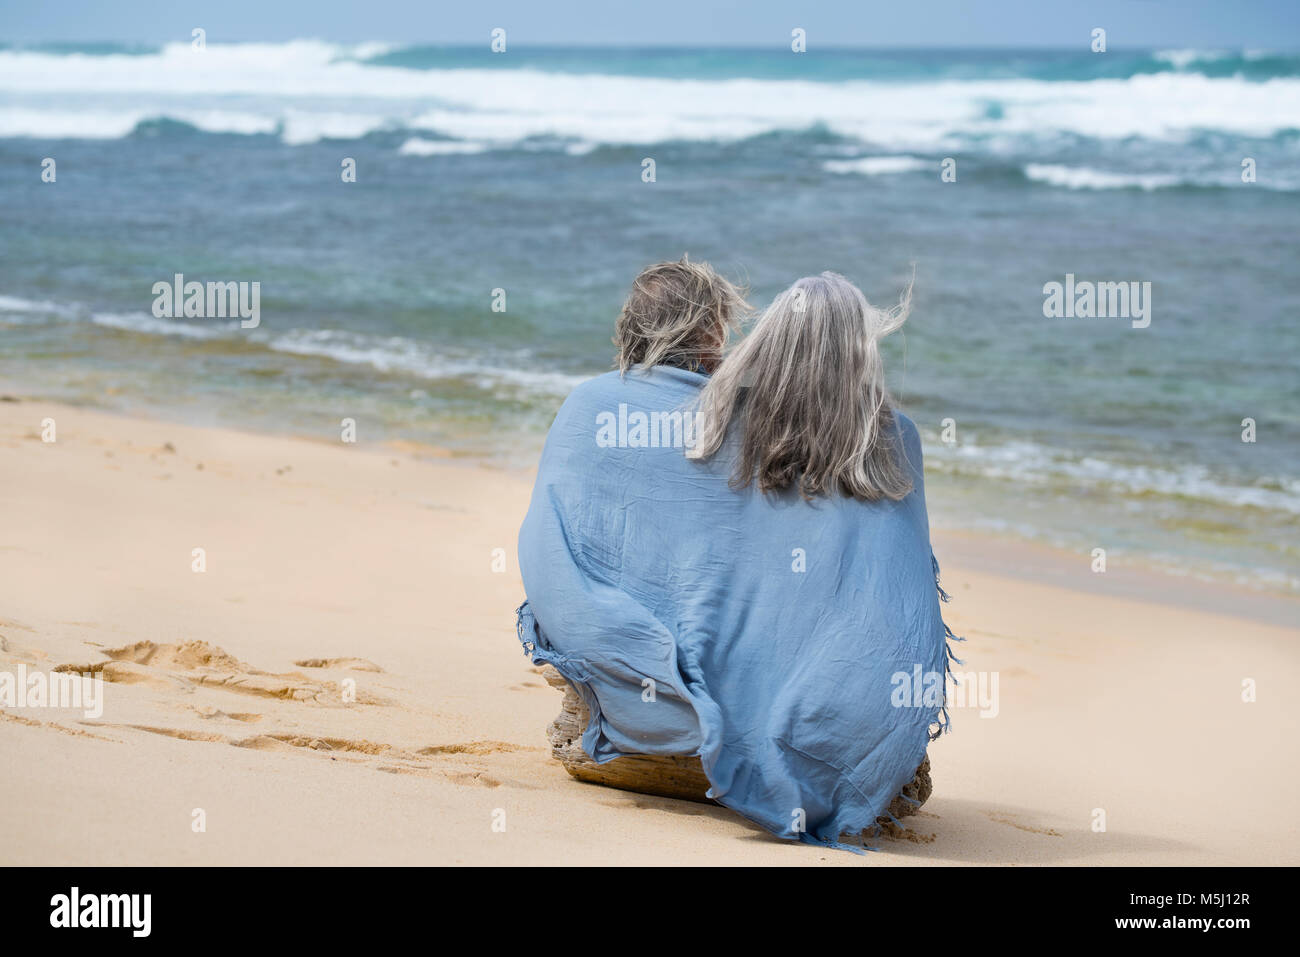 Coppia senior seduto sulla spiaggia, avvolto in un mantello Foto Stock